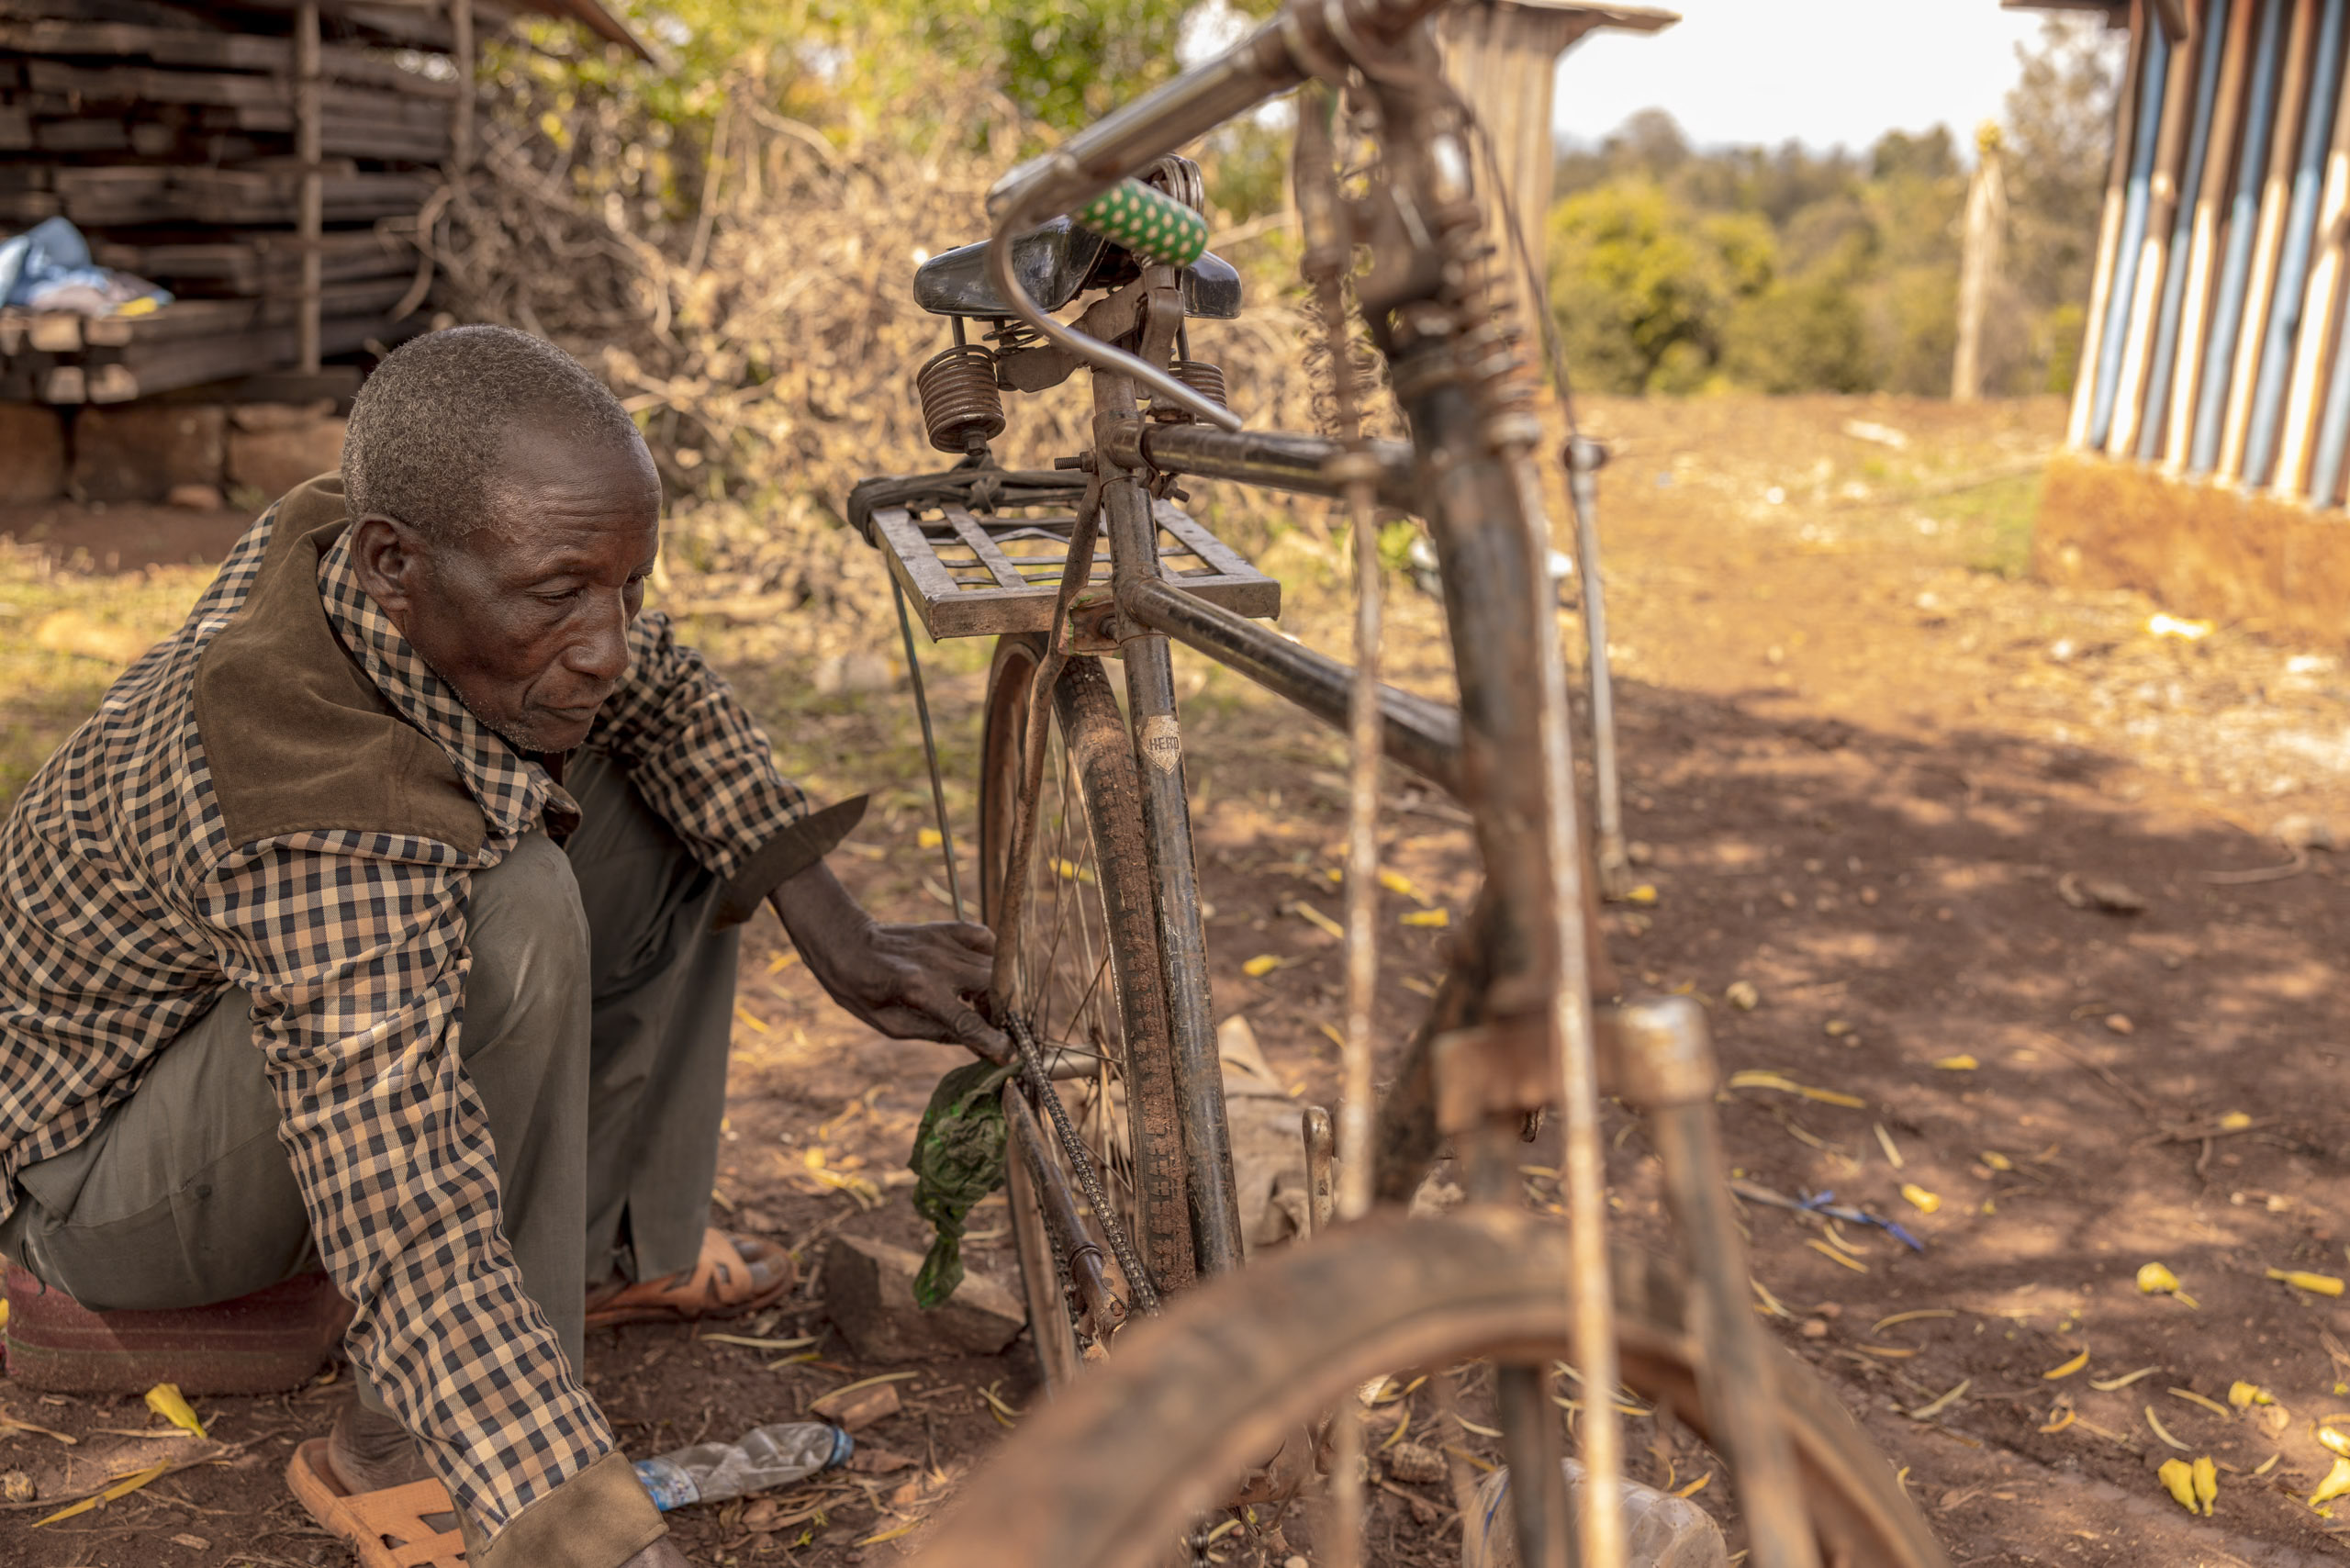 Ein älterer Mann repariert in ländlicher Umgebung ein Fahrrad. Er arbeitet konzentriert an dem Rad, das er aufrecht und mit einem Stock gestützt abstellt. © Fotografie Tomas Rodriguez